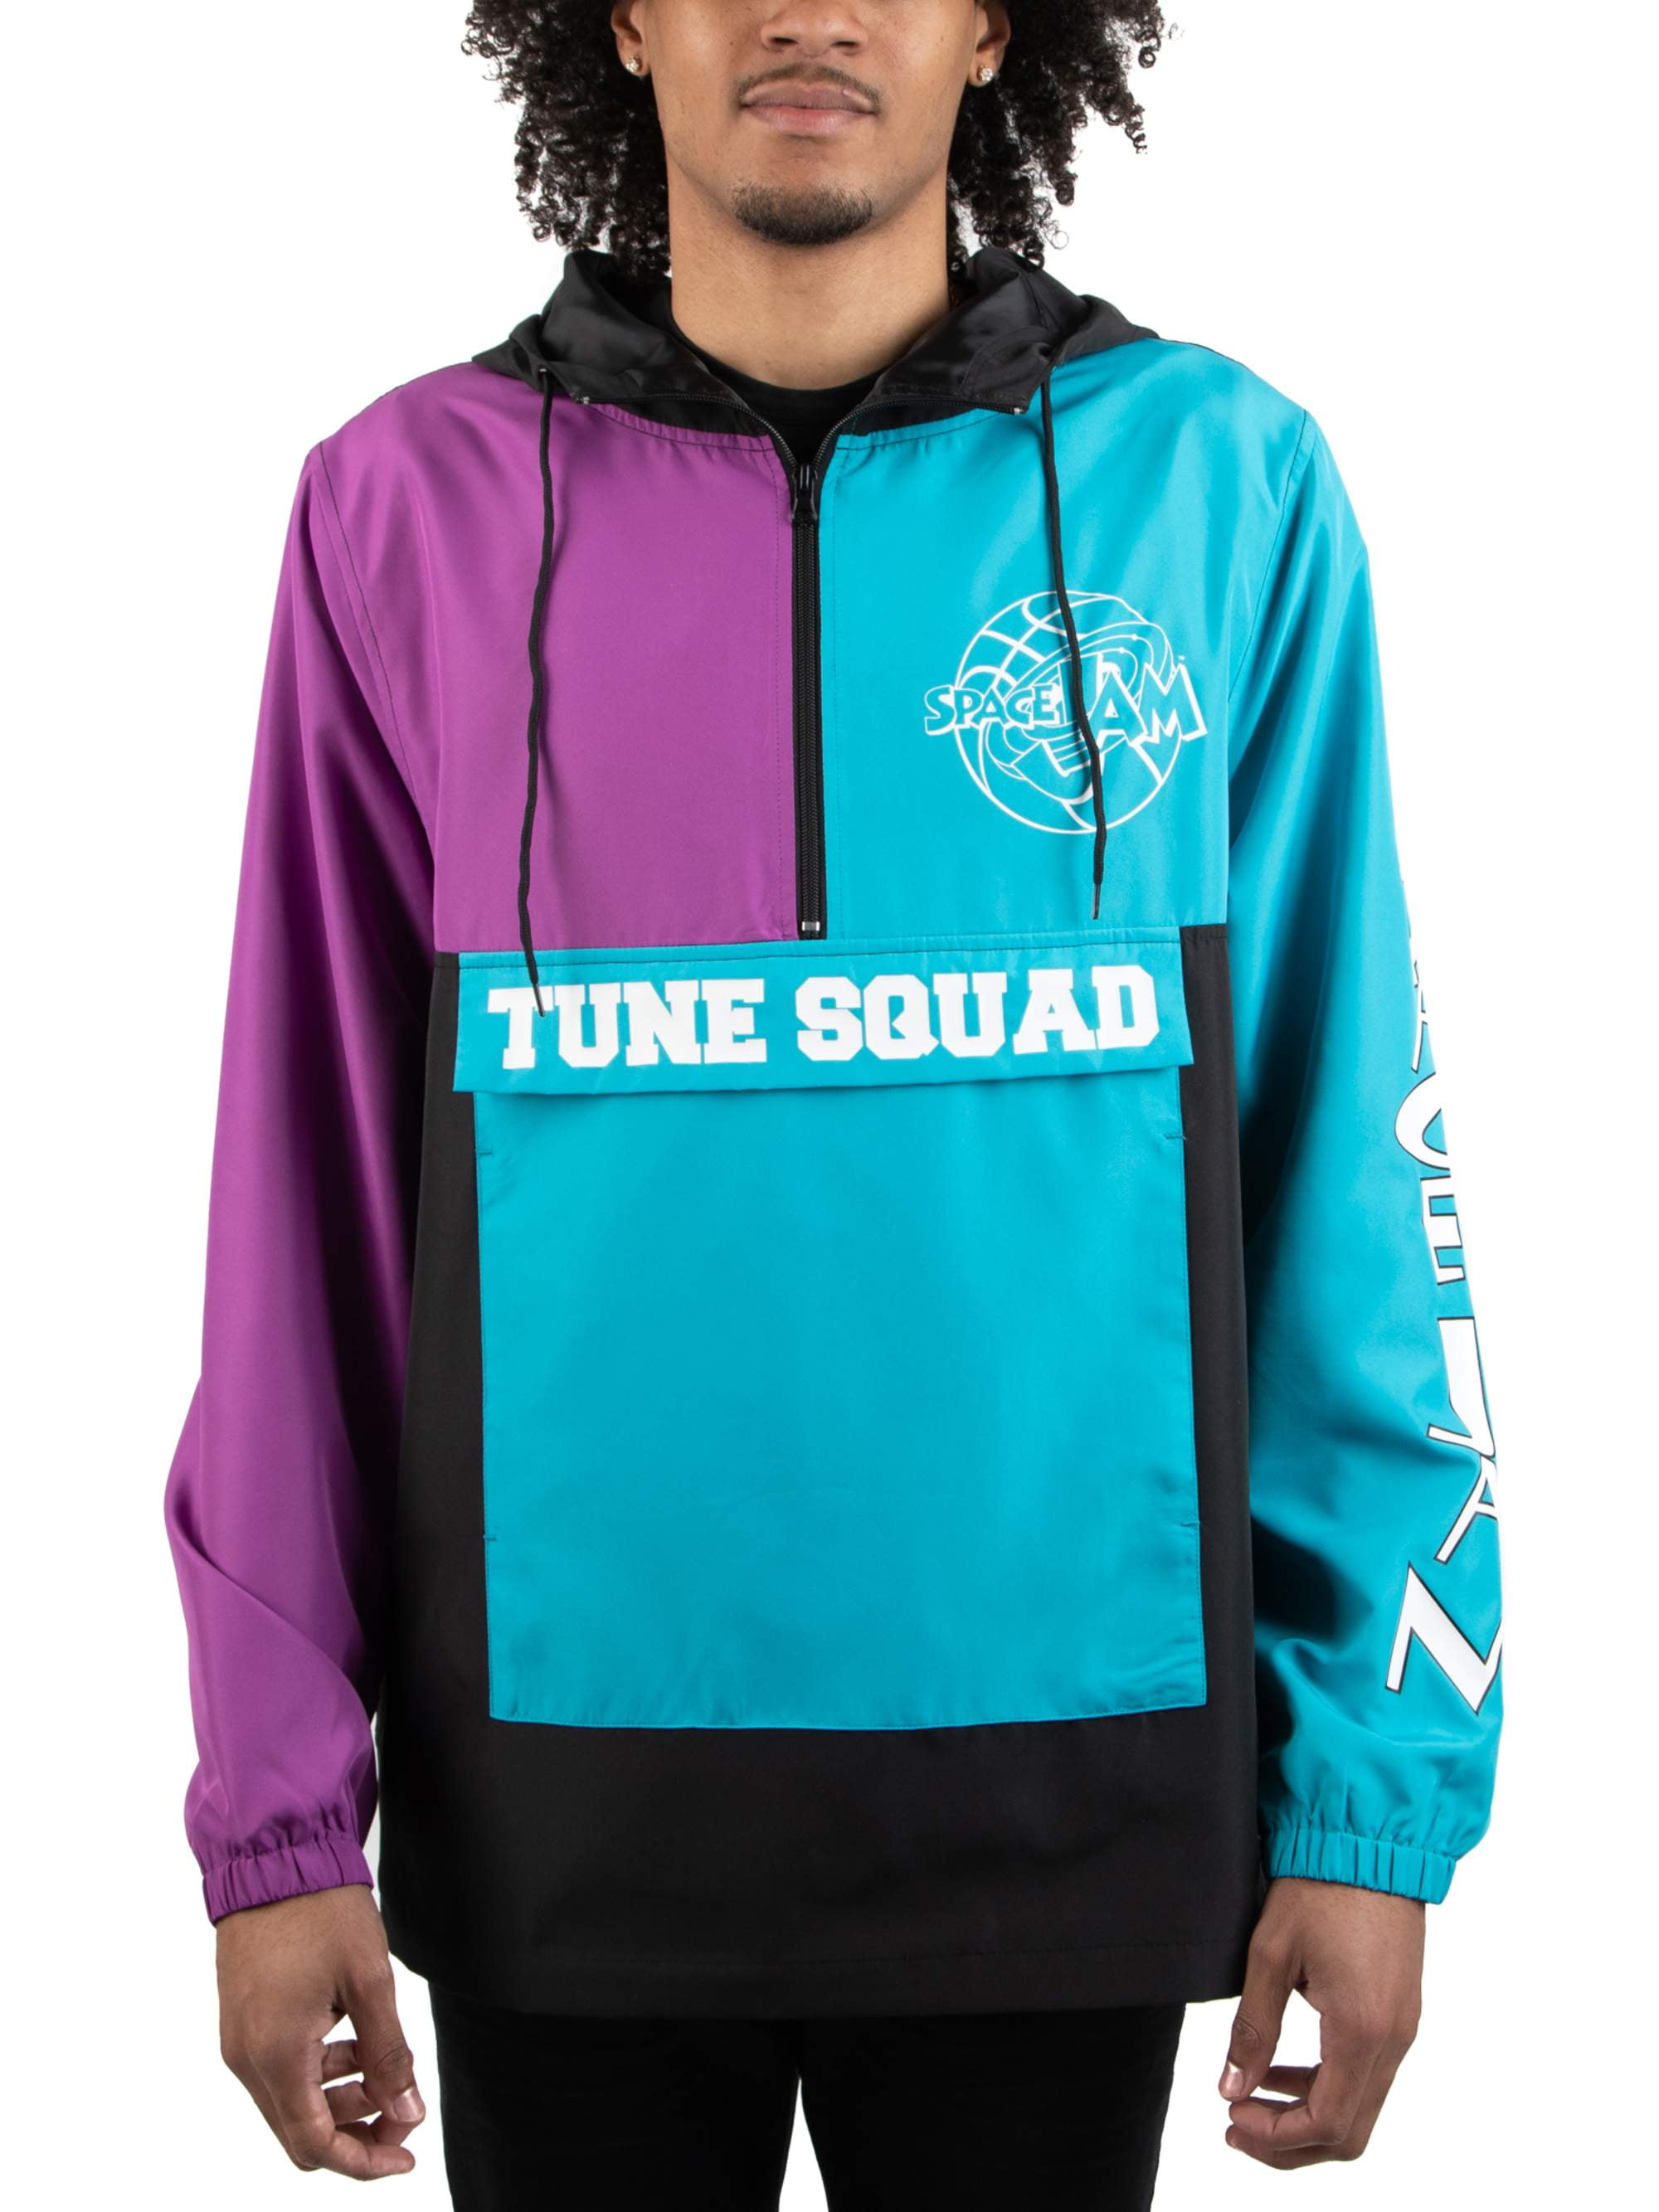 toon squad jacket